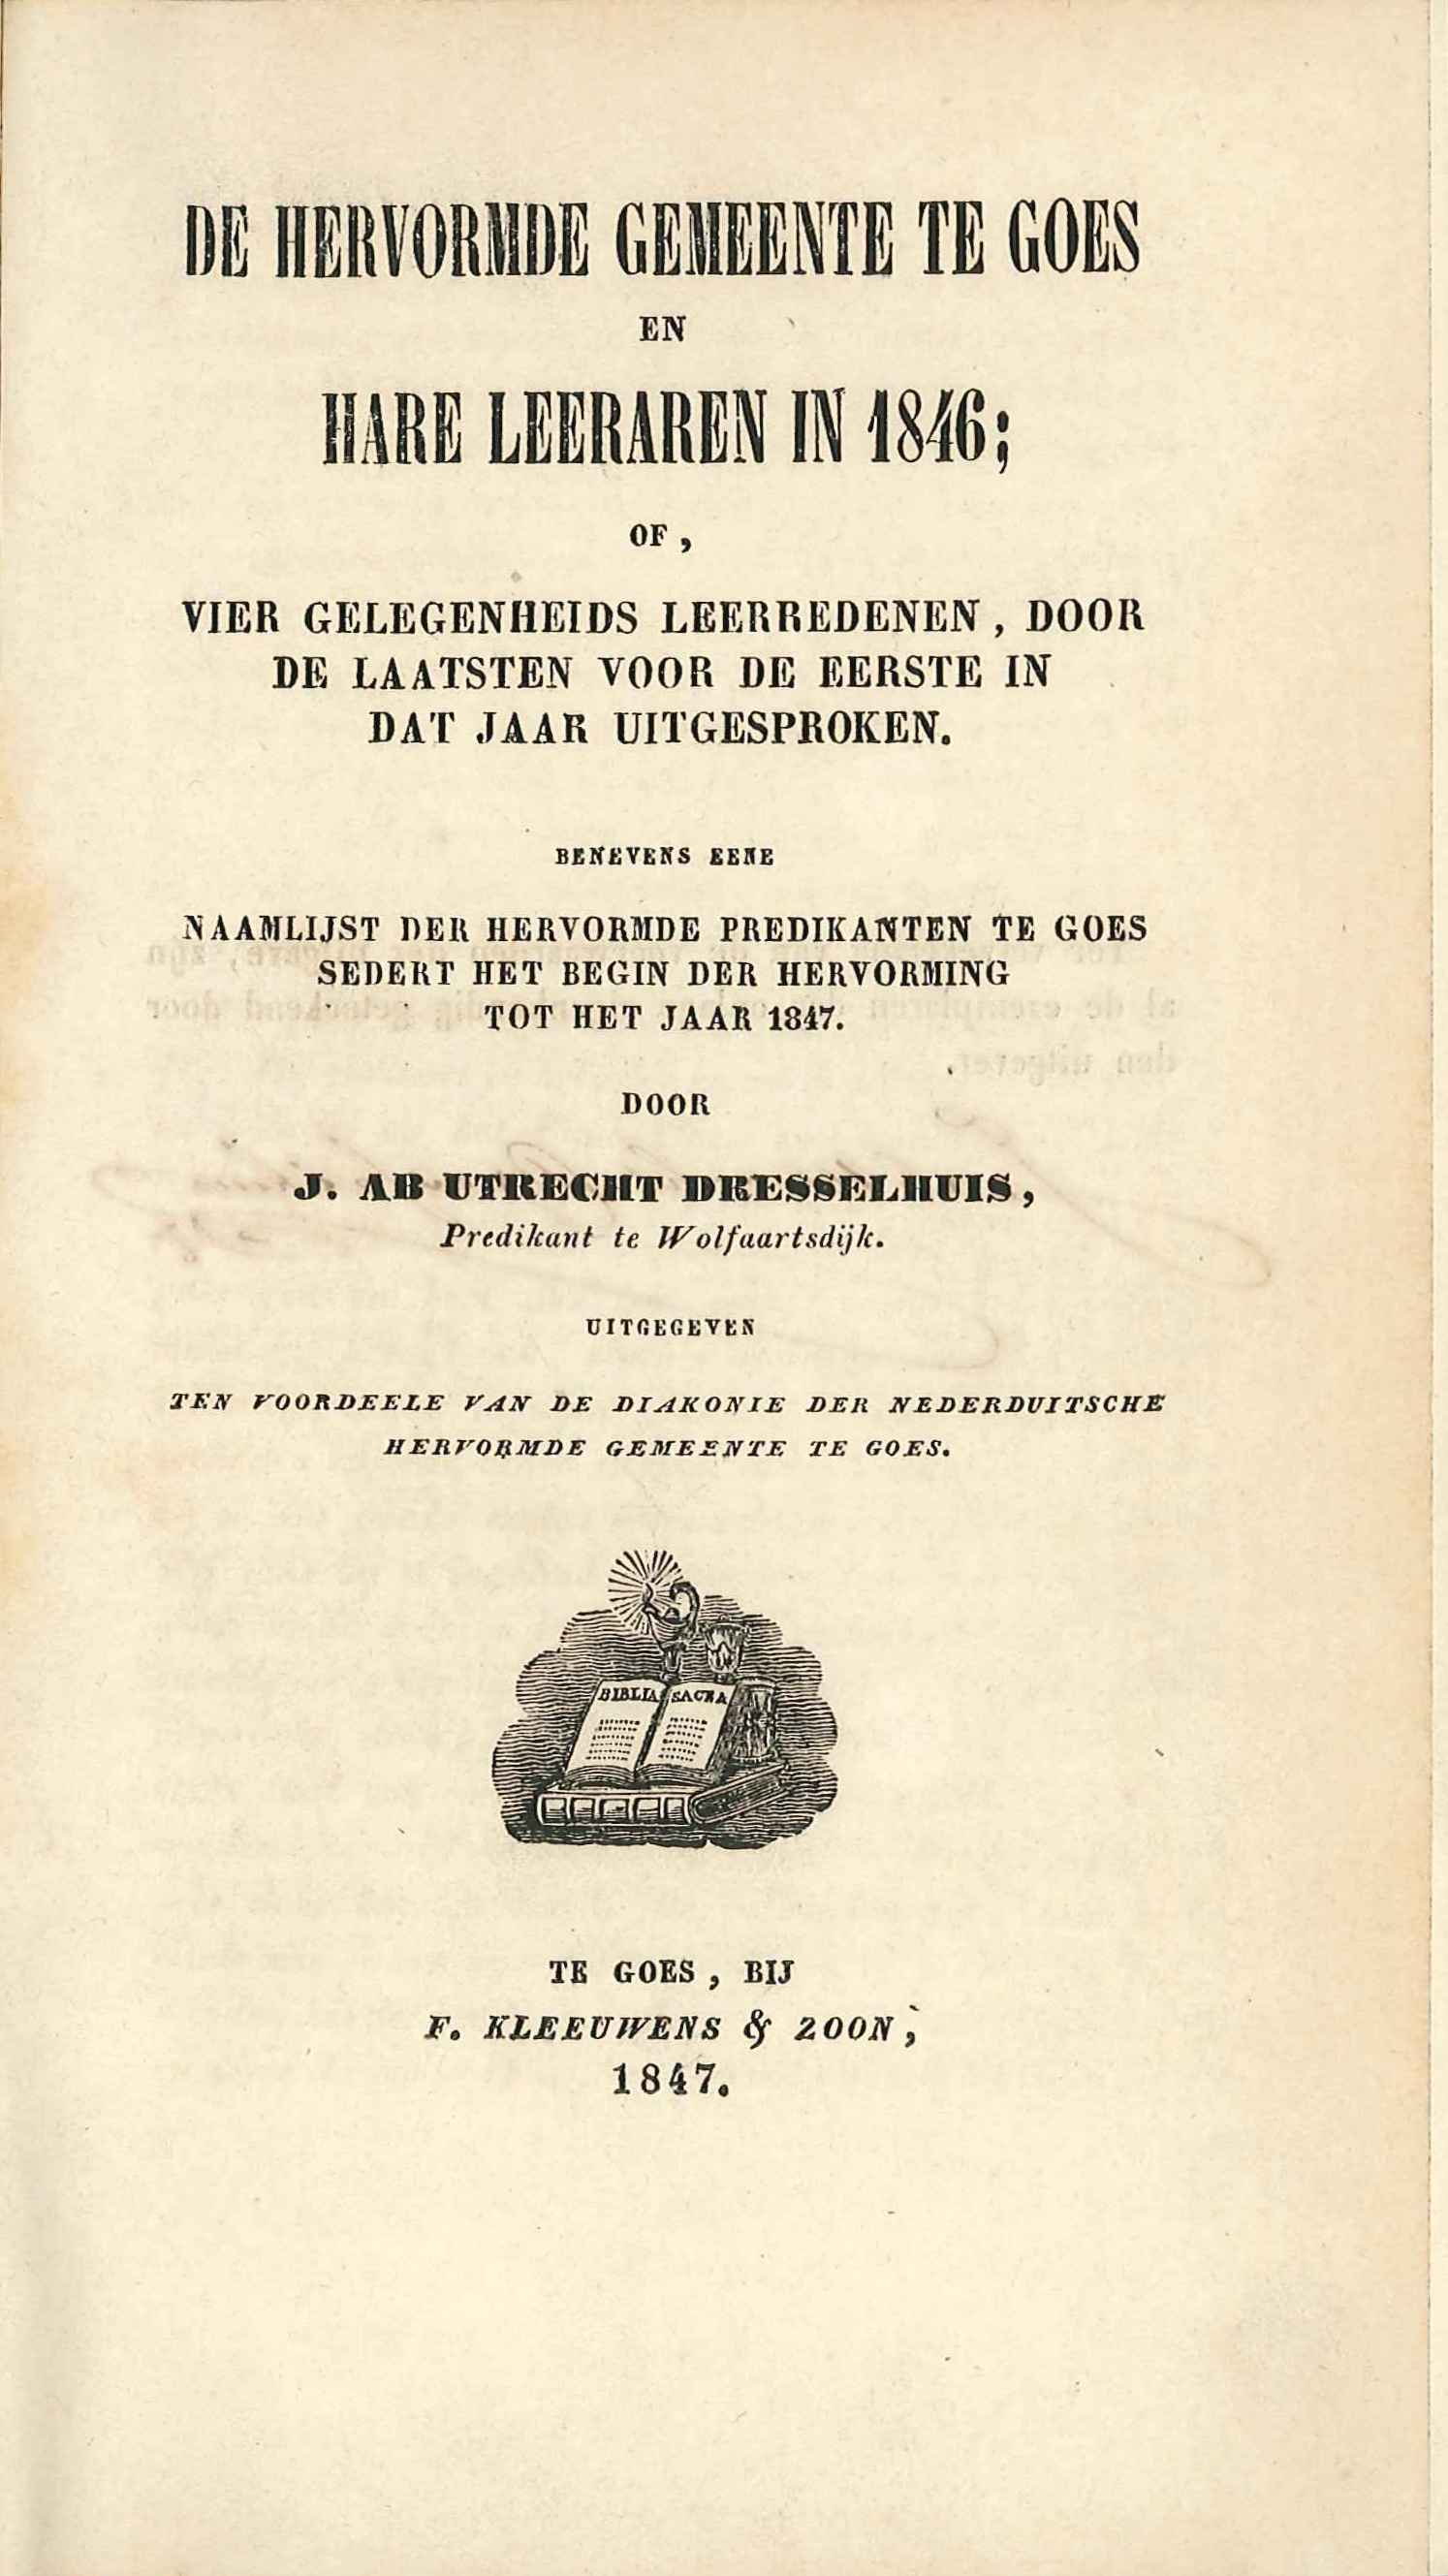 De Hervormde Gemeente te Goes, door J. ab Utrecht Dresselhuis. Goes 1847. GAG.HB.